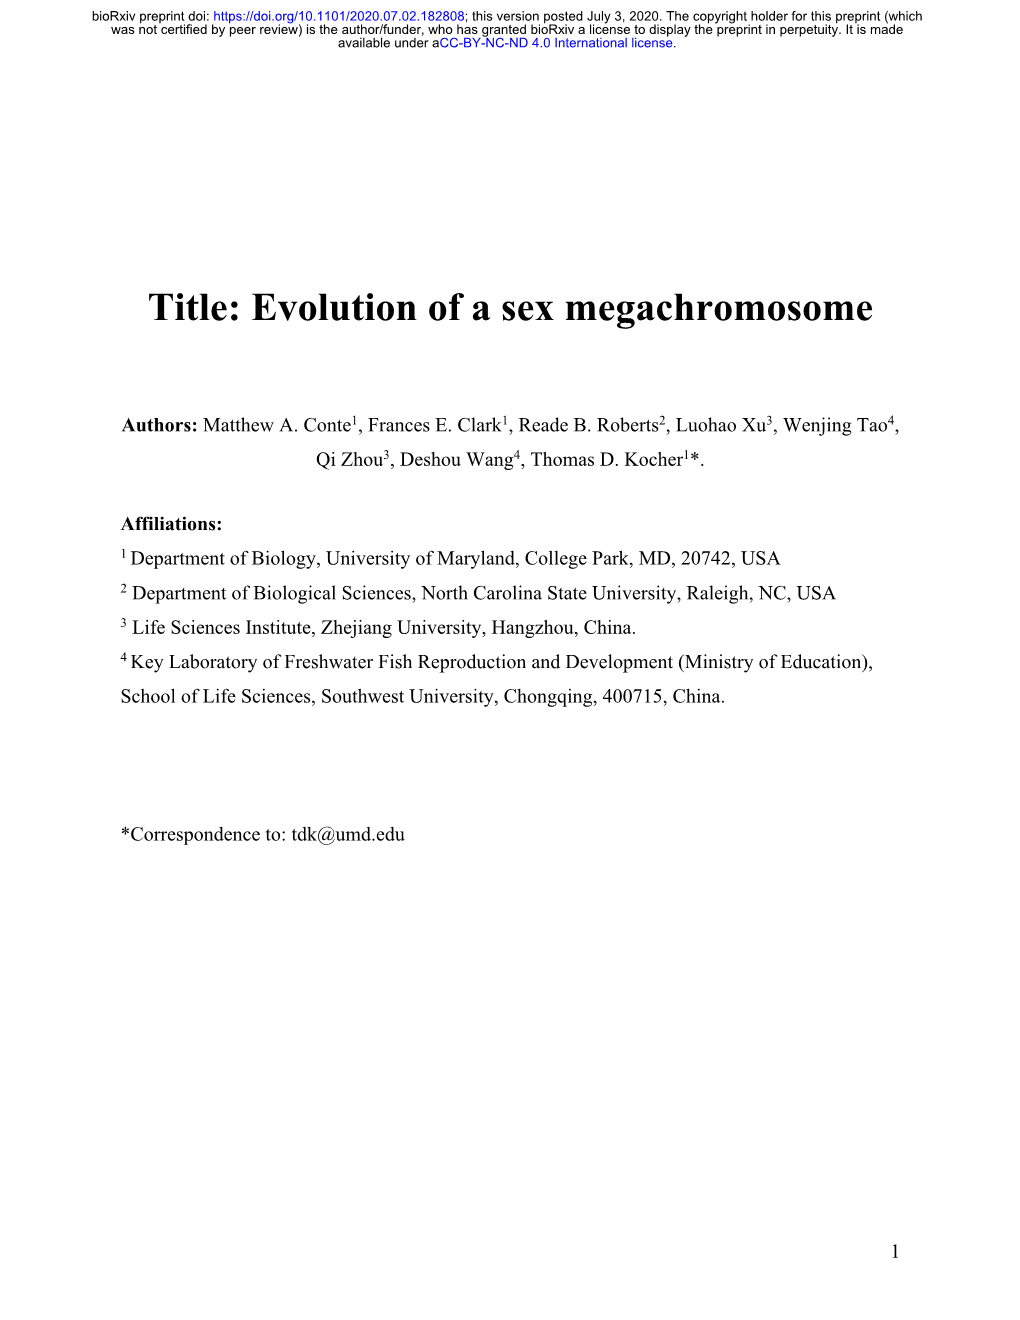 Evolution of a Sex Megachromosome